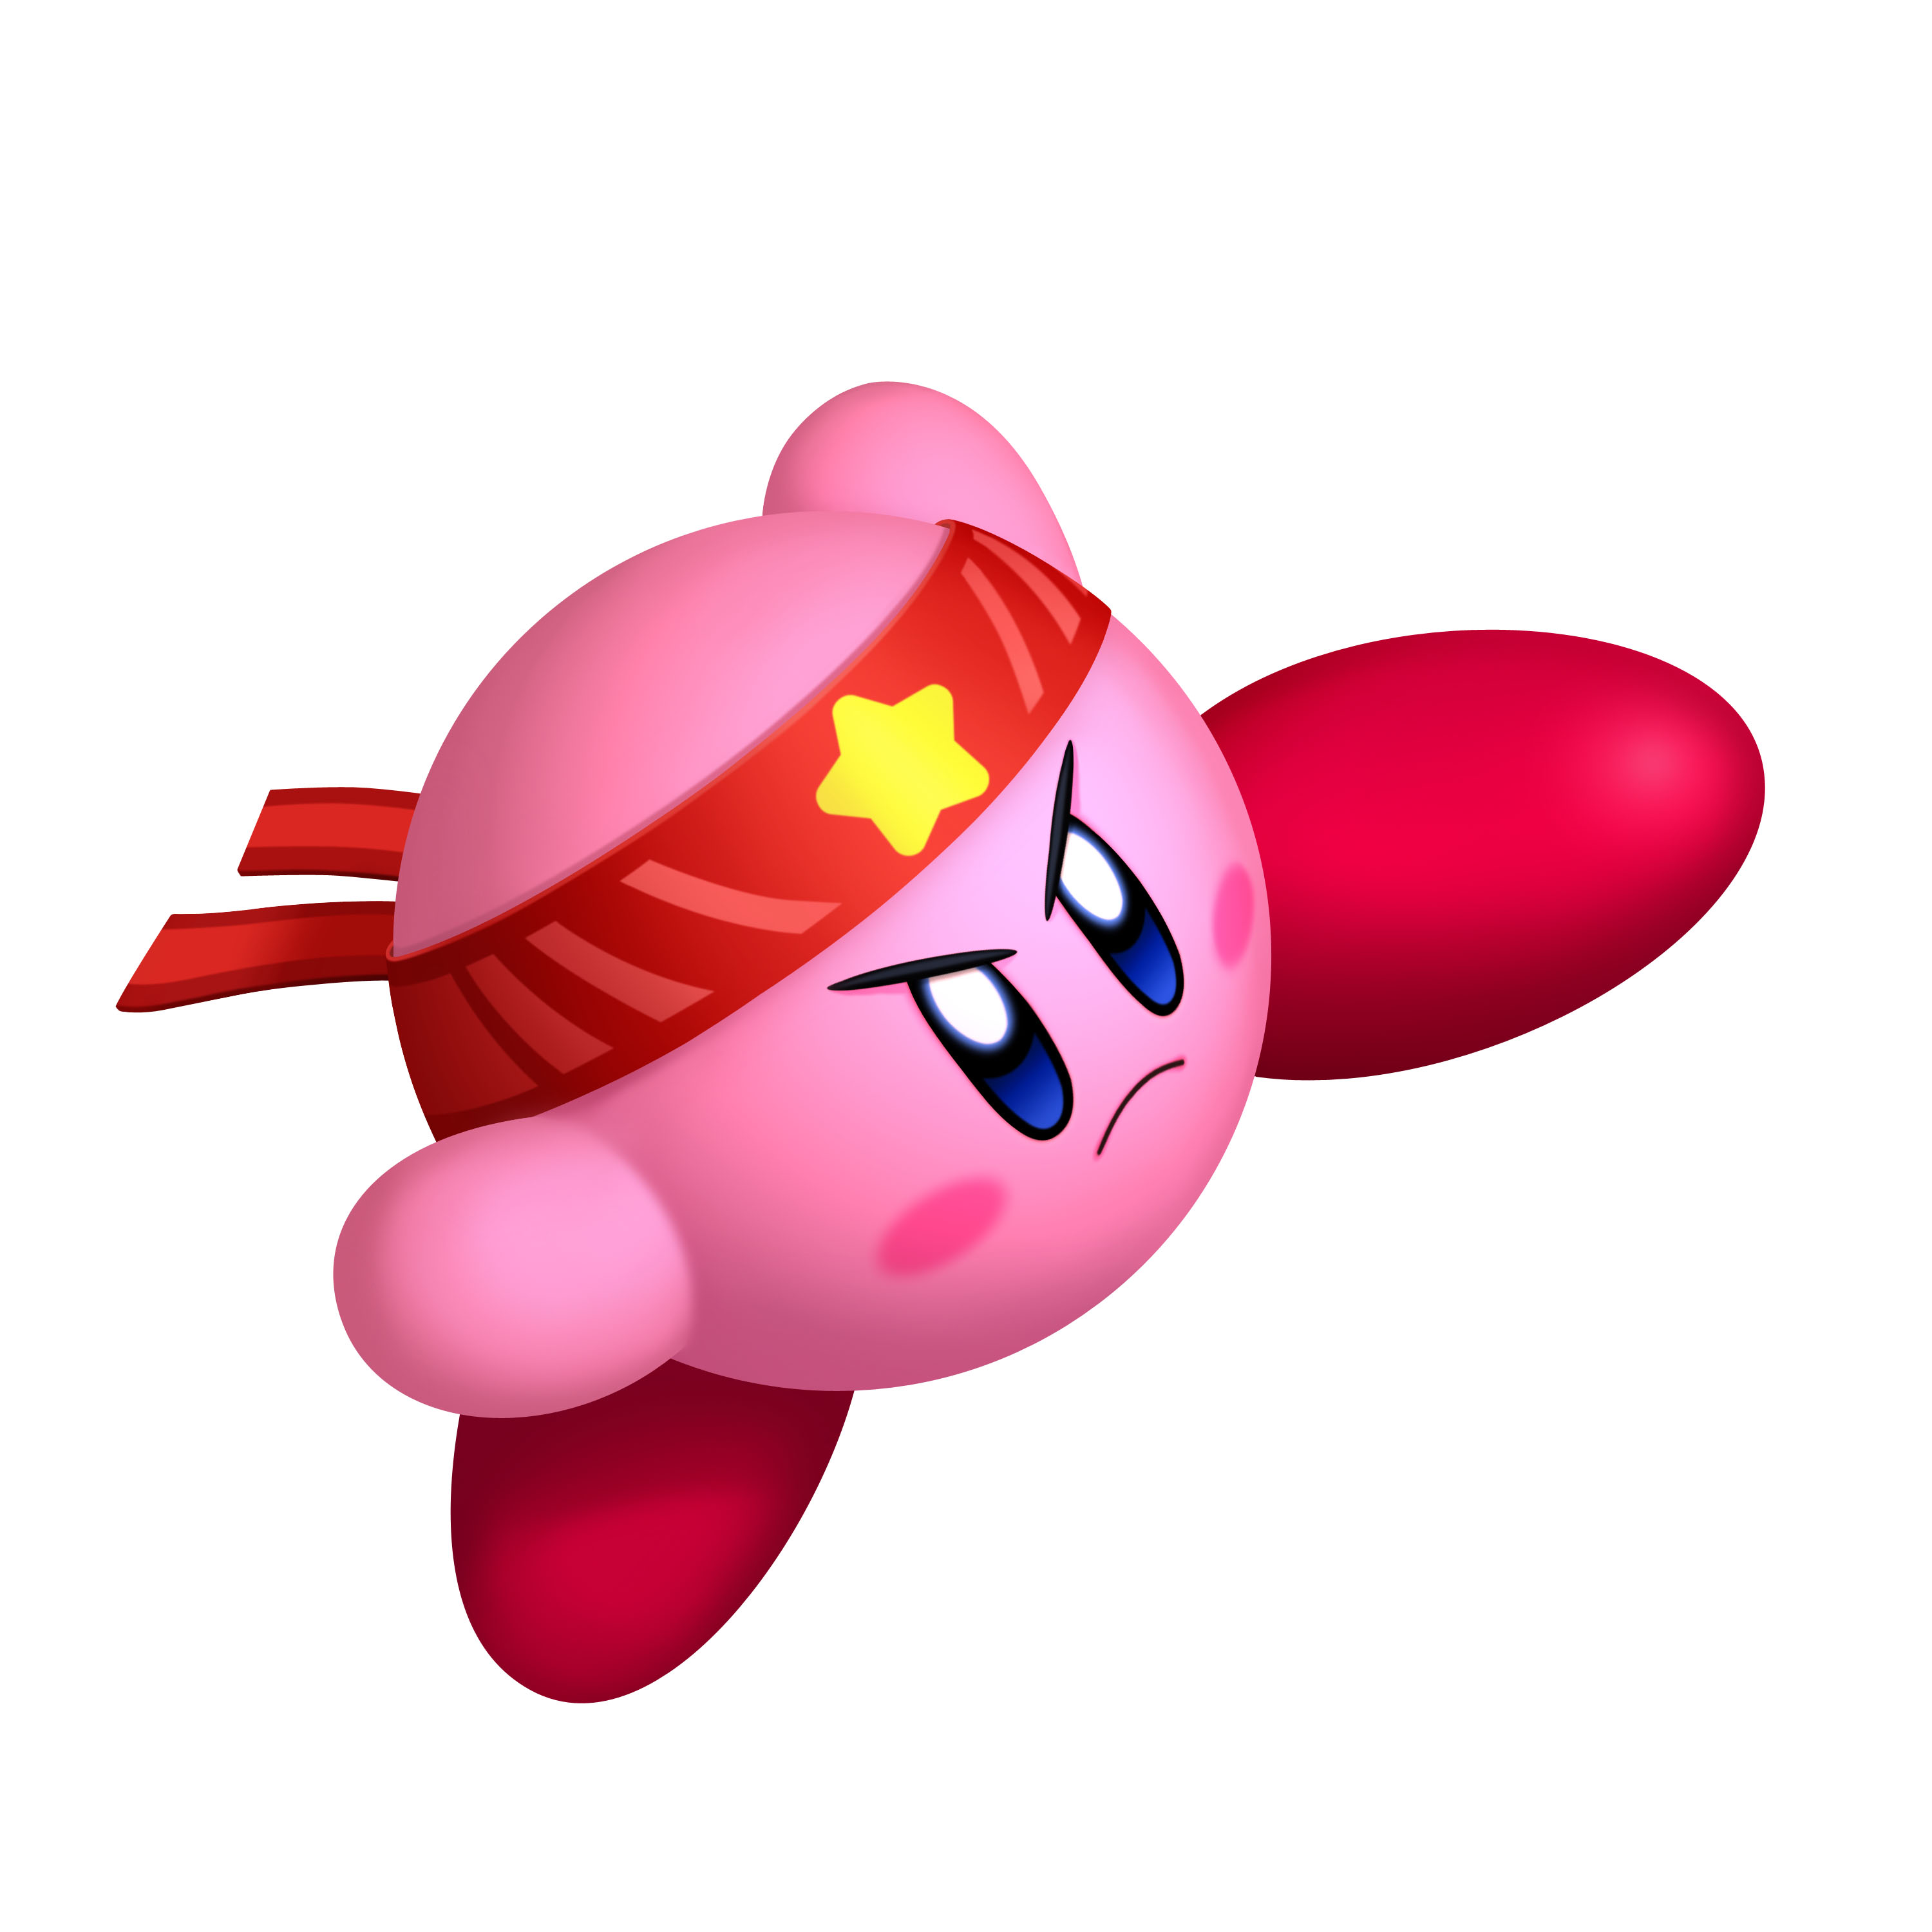 Kirby's Return to Dream Land, Kirby Wiki